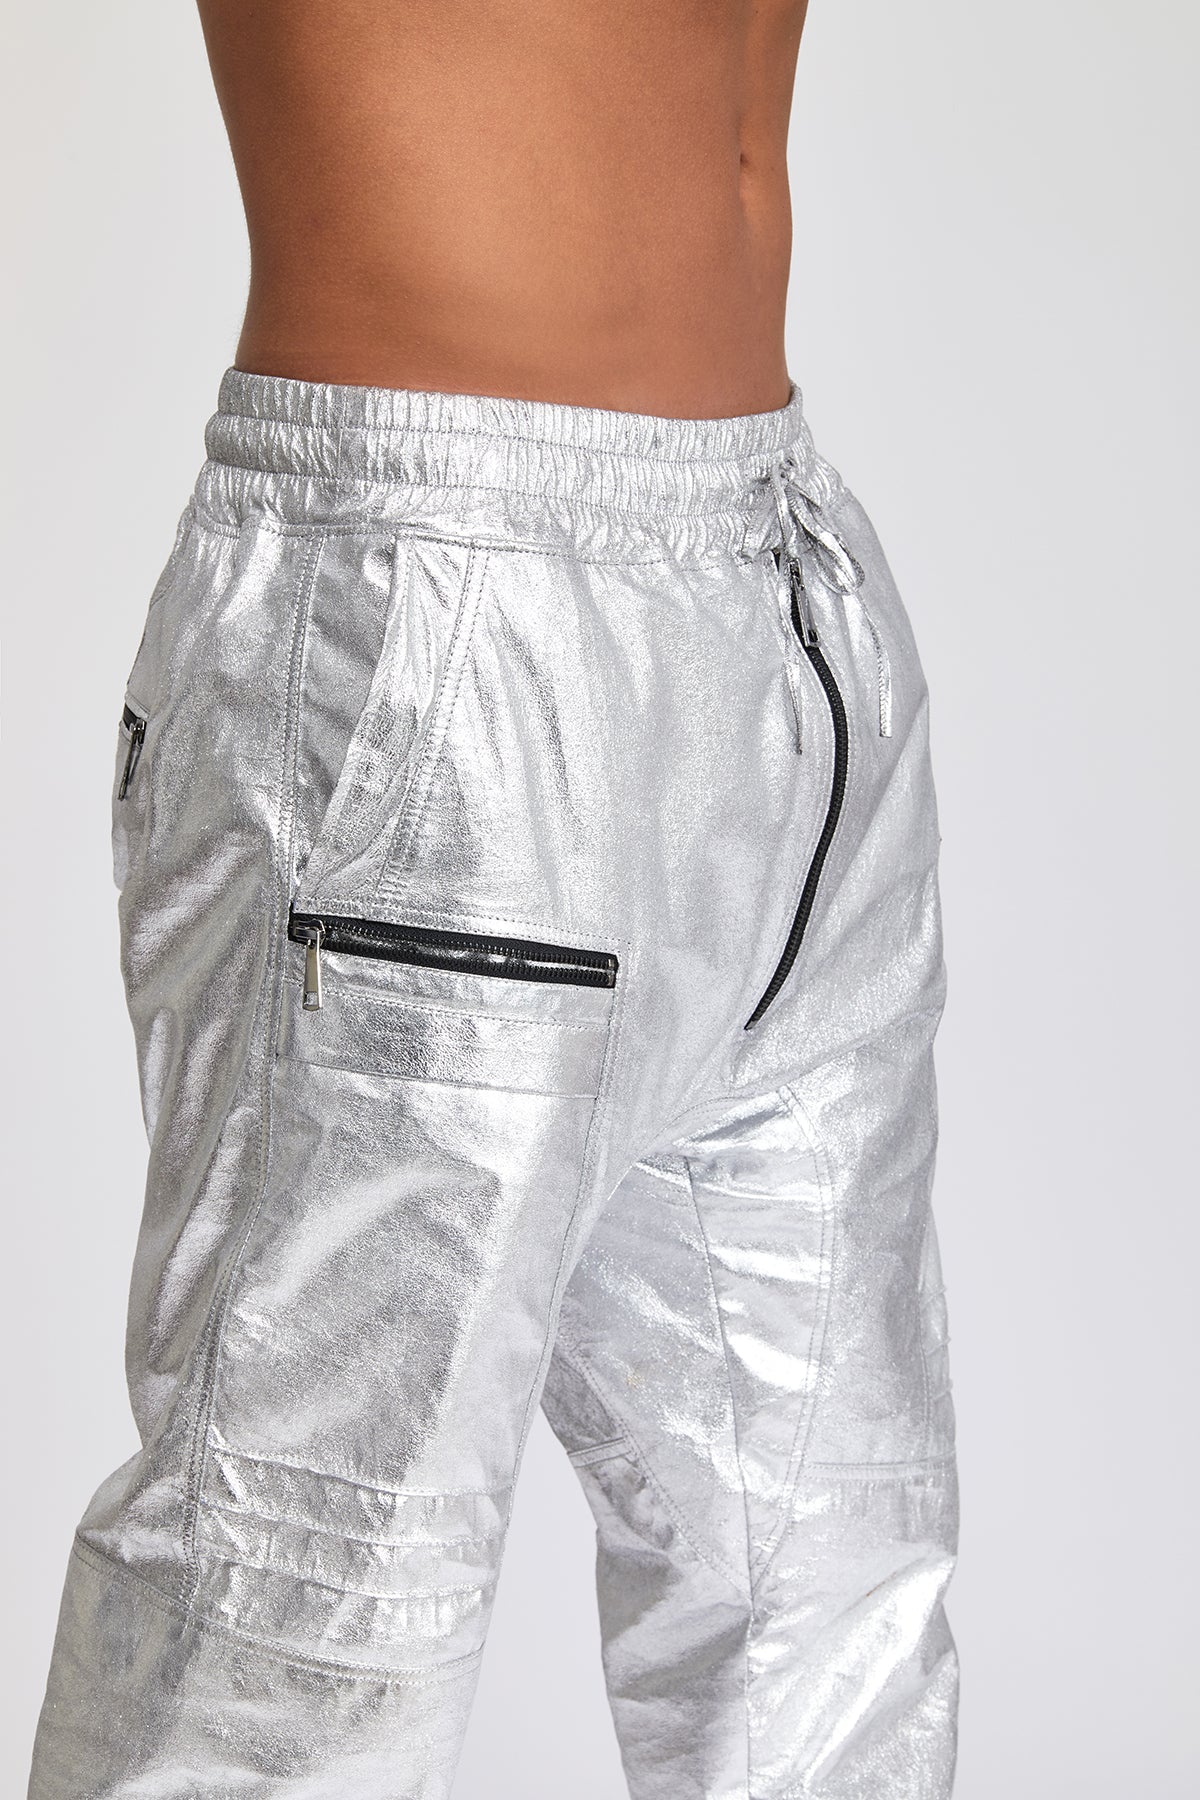 Silver Chrome Pants